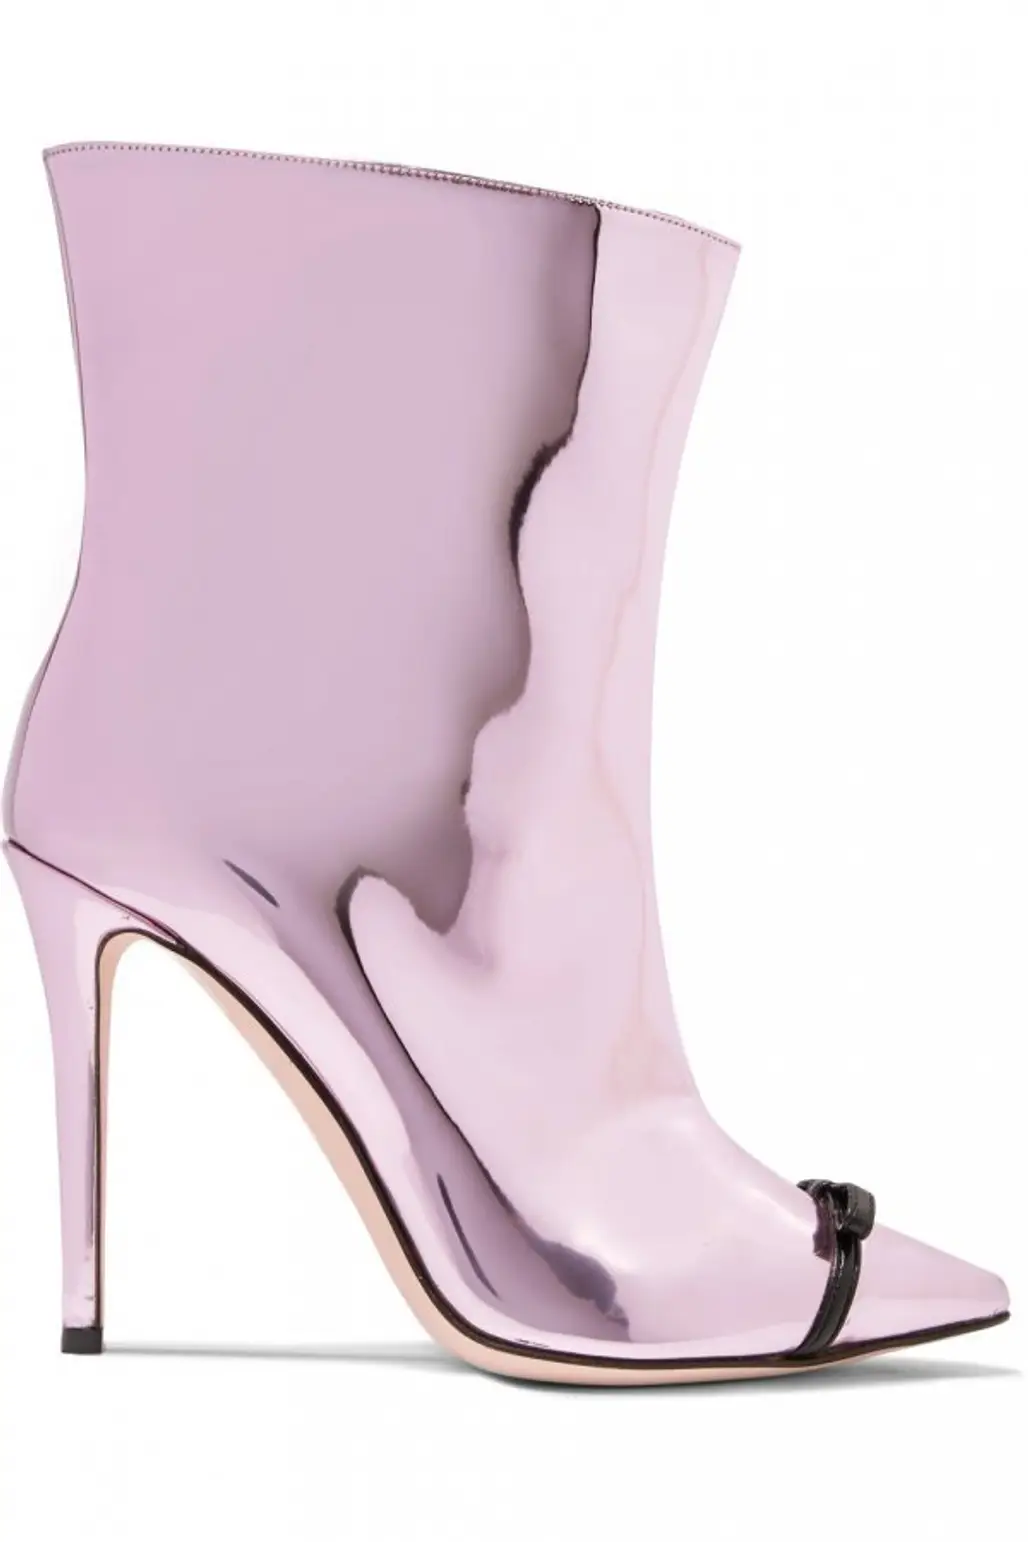 footwear, purple, lilac, pink, high heeled footwear,